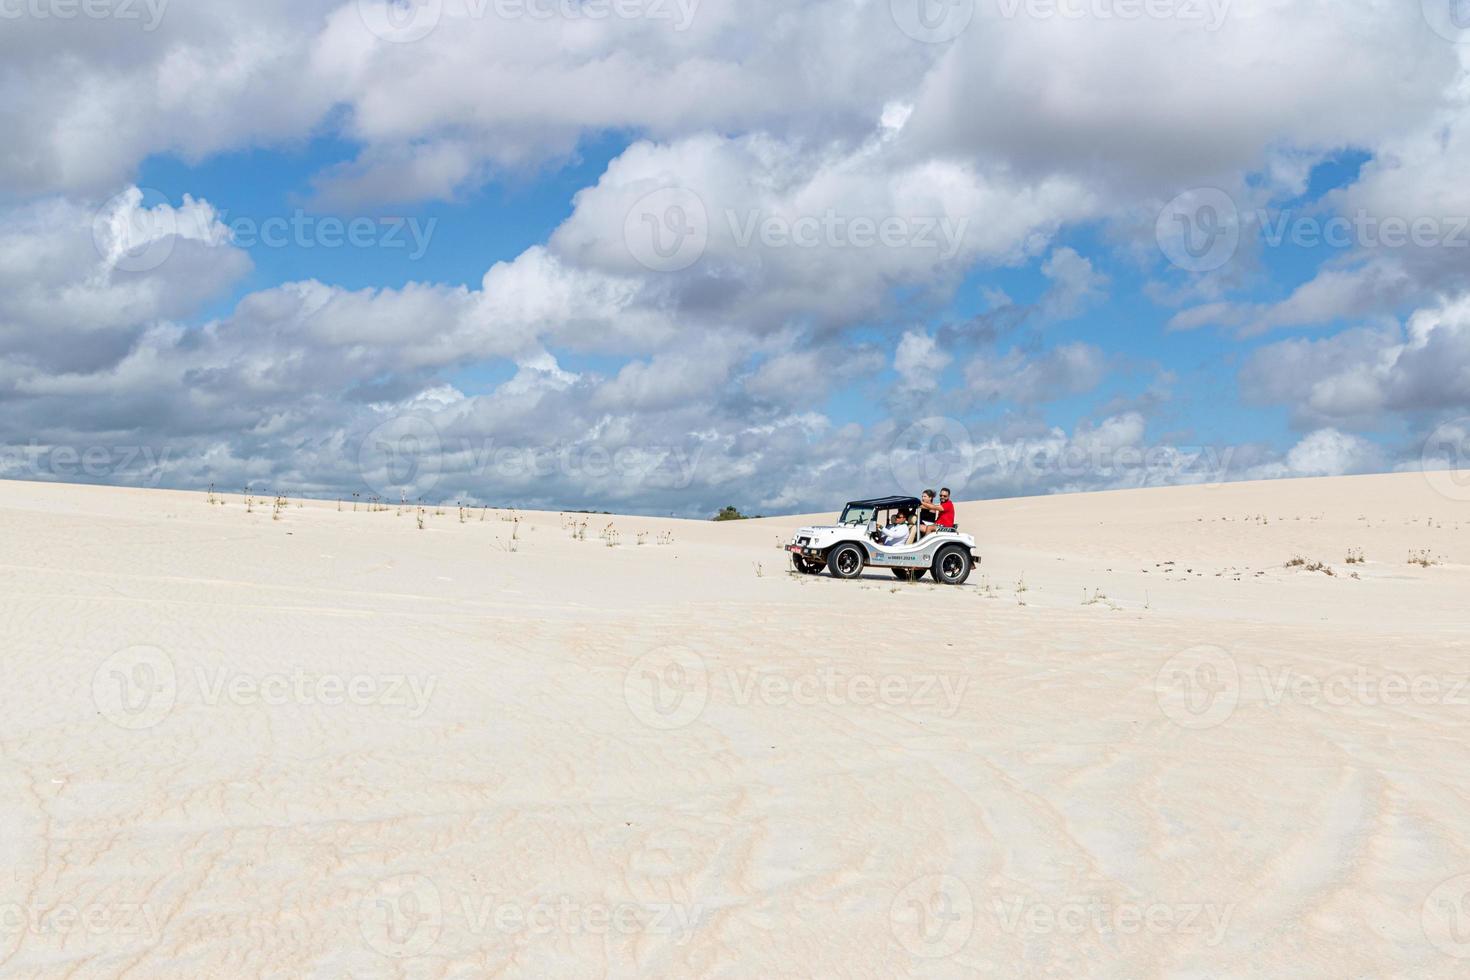 natal, brésil, mai 2019 - voiture buggy dans les sables photo